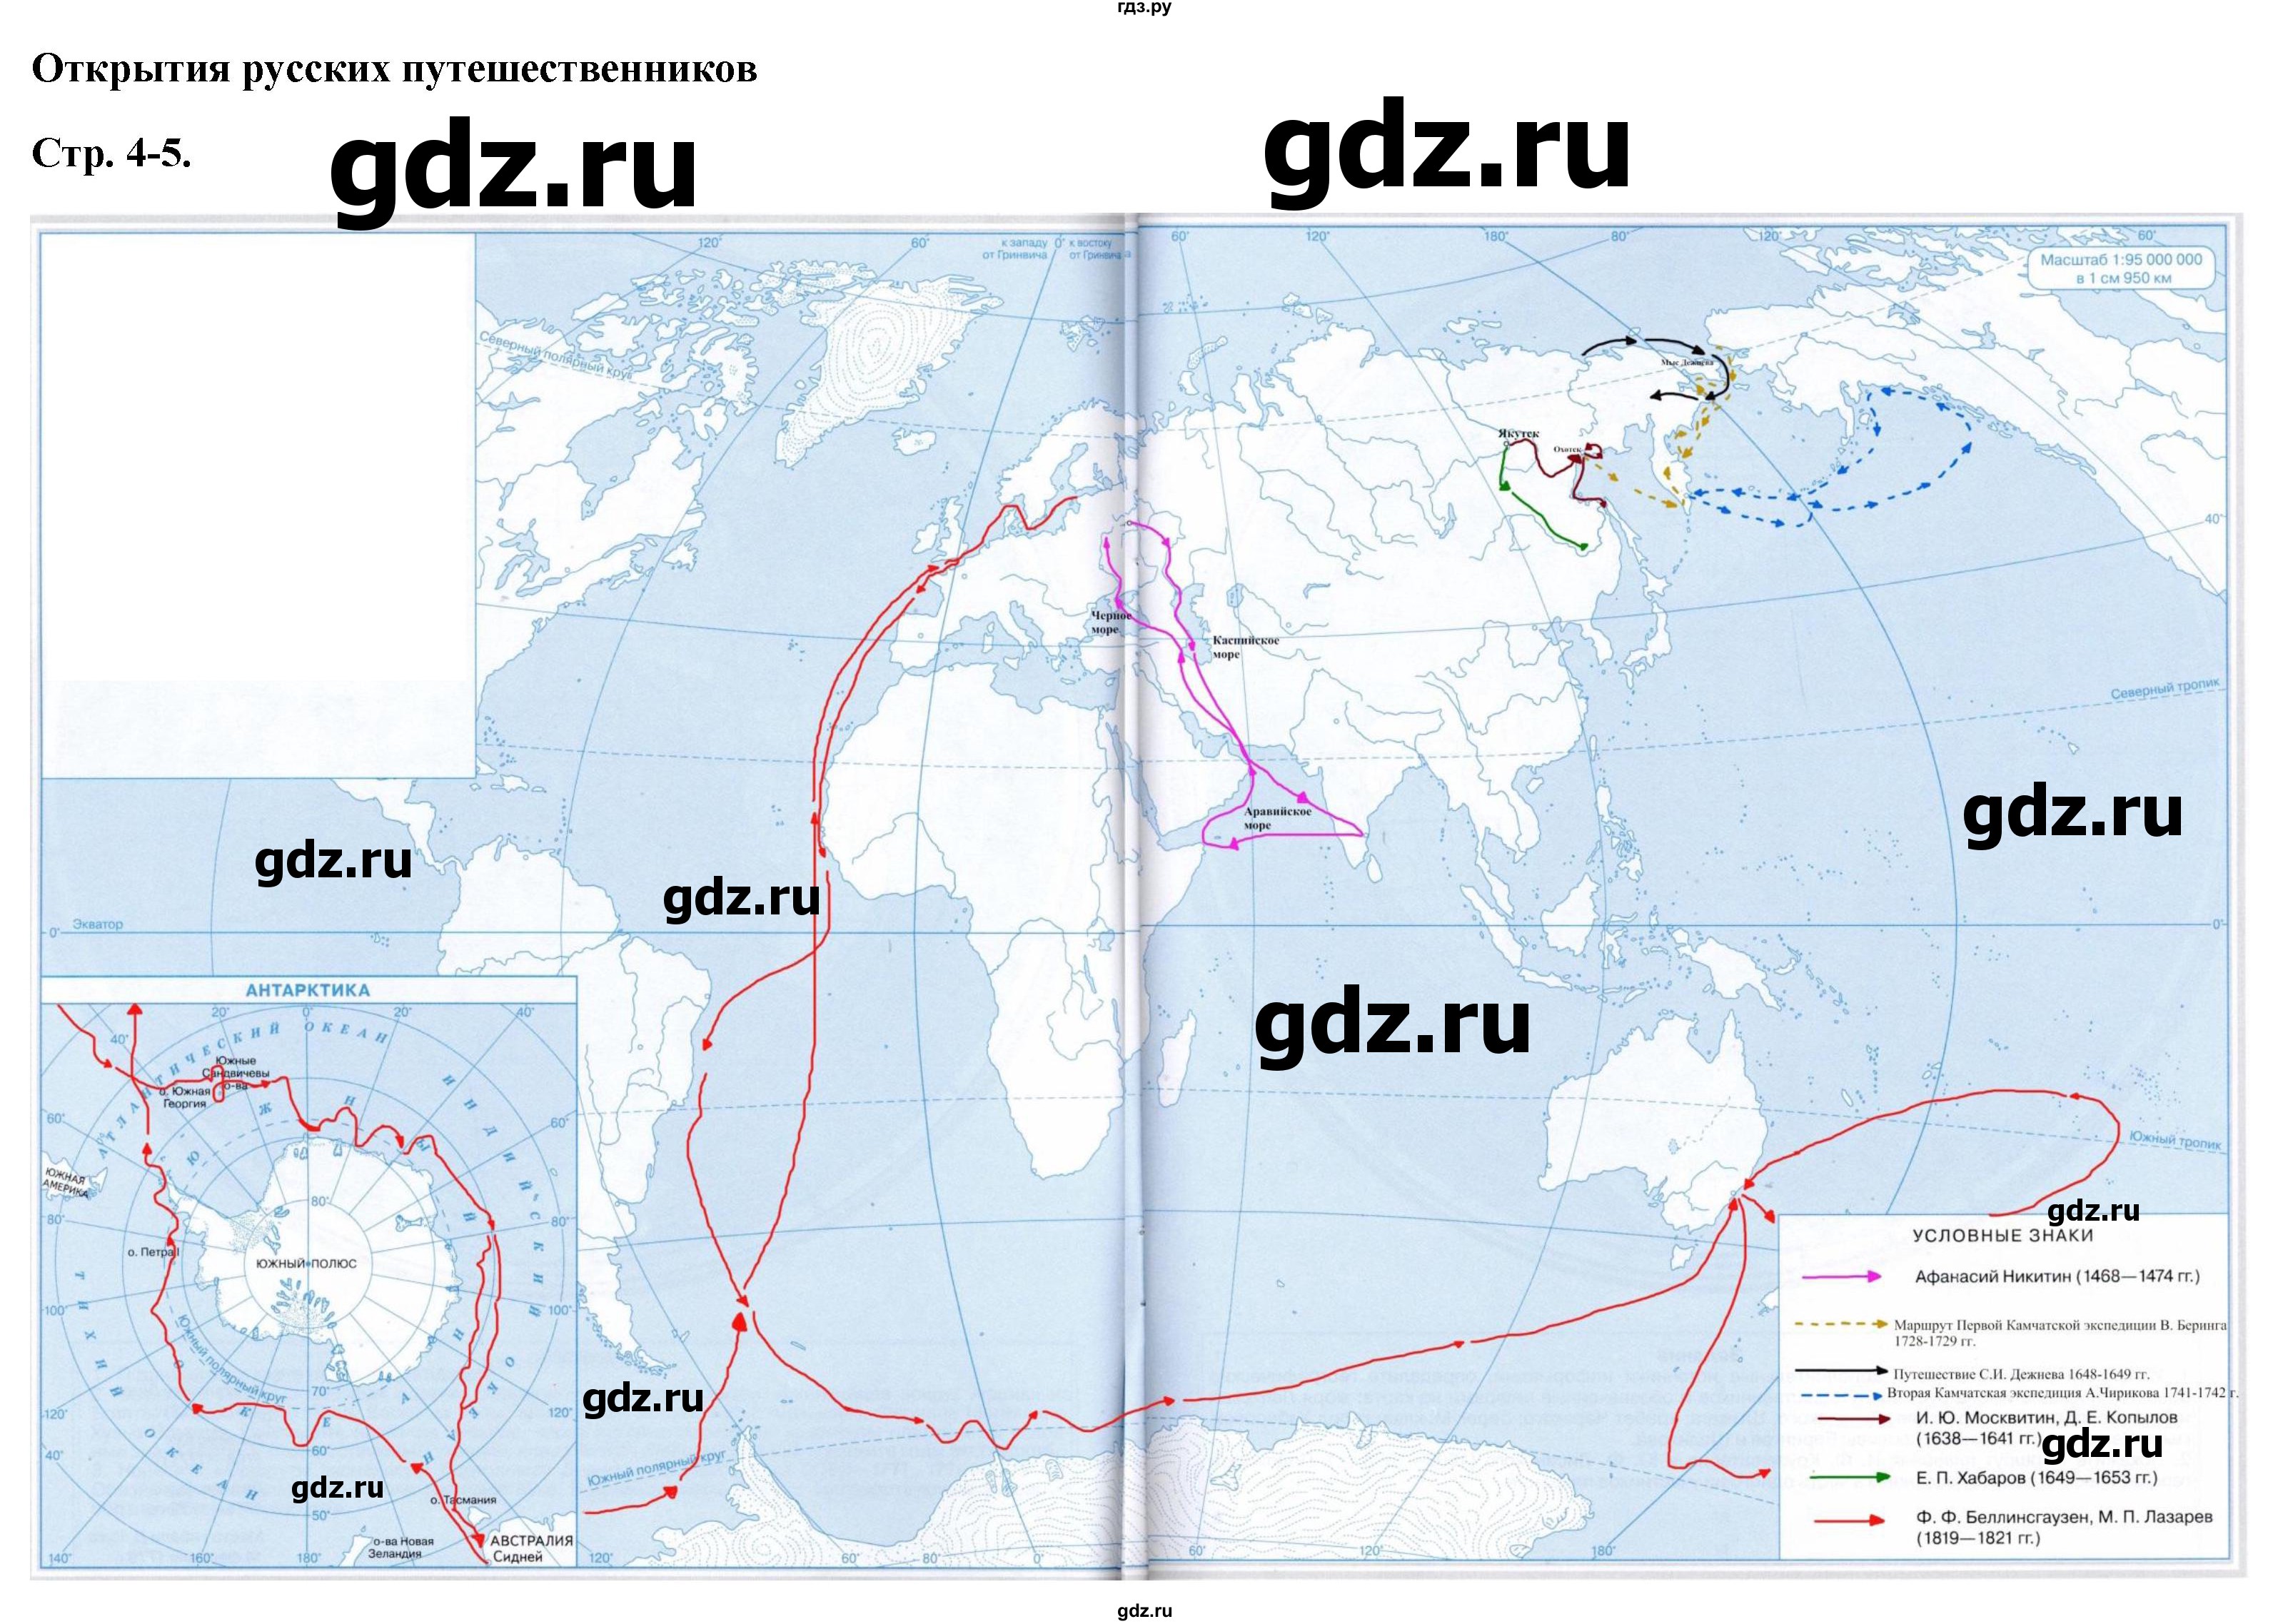 ГДЗ контурные карты стр.4-5 география 5 класс атлас с контурными картамиКурбский, Герасимова